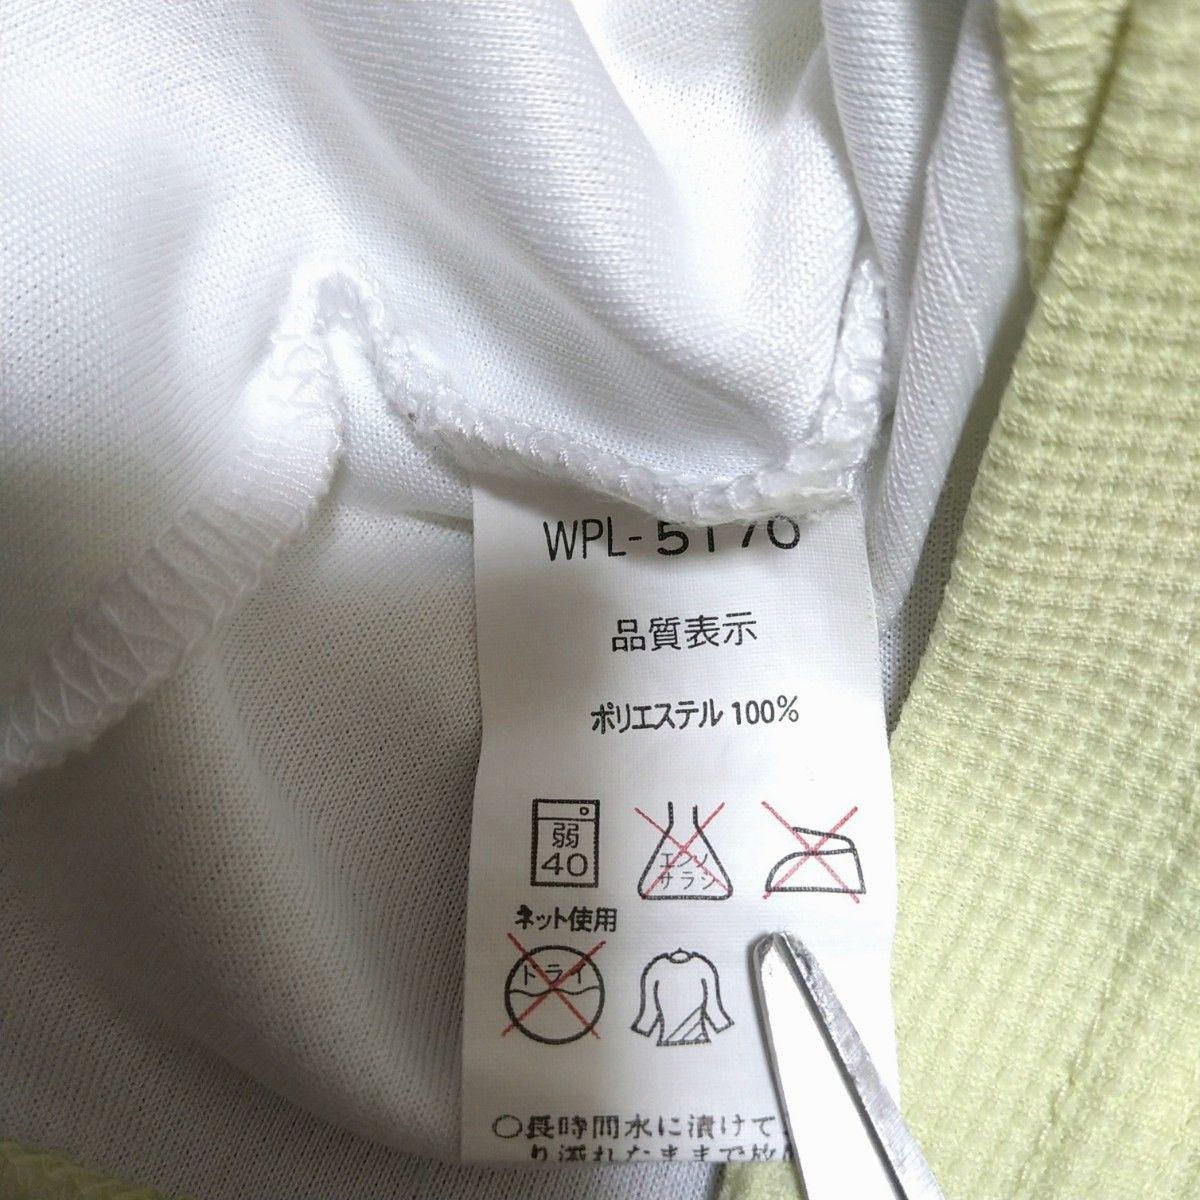 プリンス レディース L 半袖 ポロシャツ テニスウェア Tシャツ 薄いレモンイエロー ホワイト prince 150cm 160